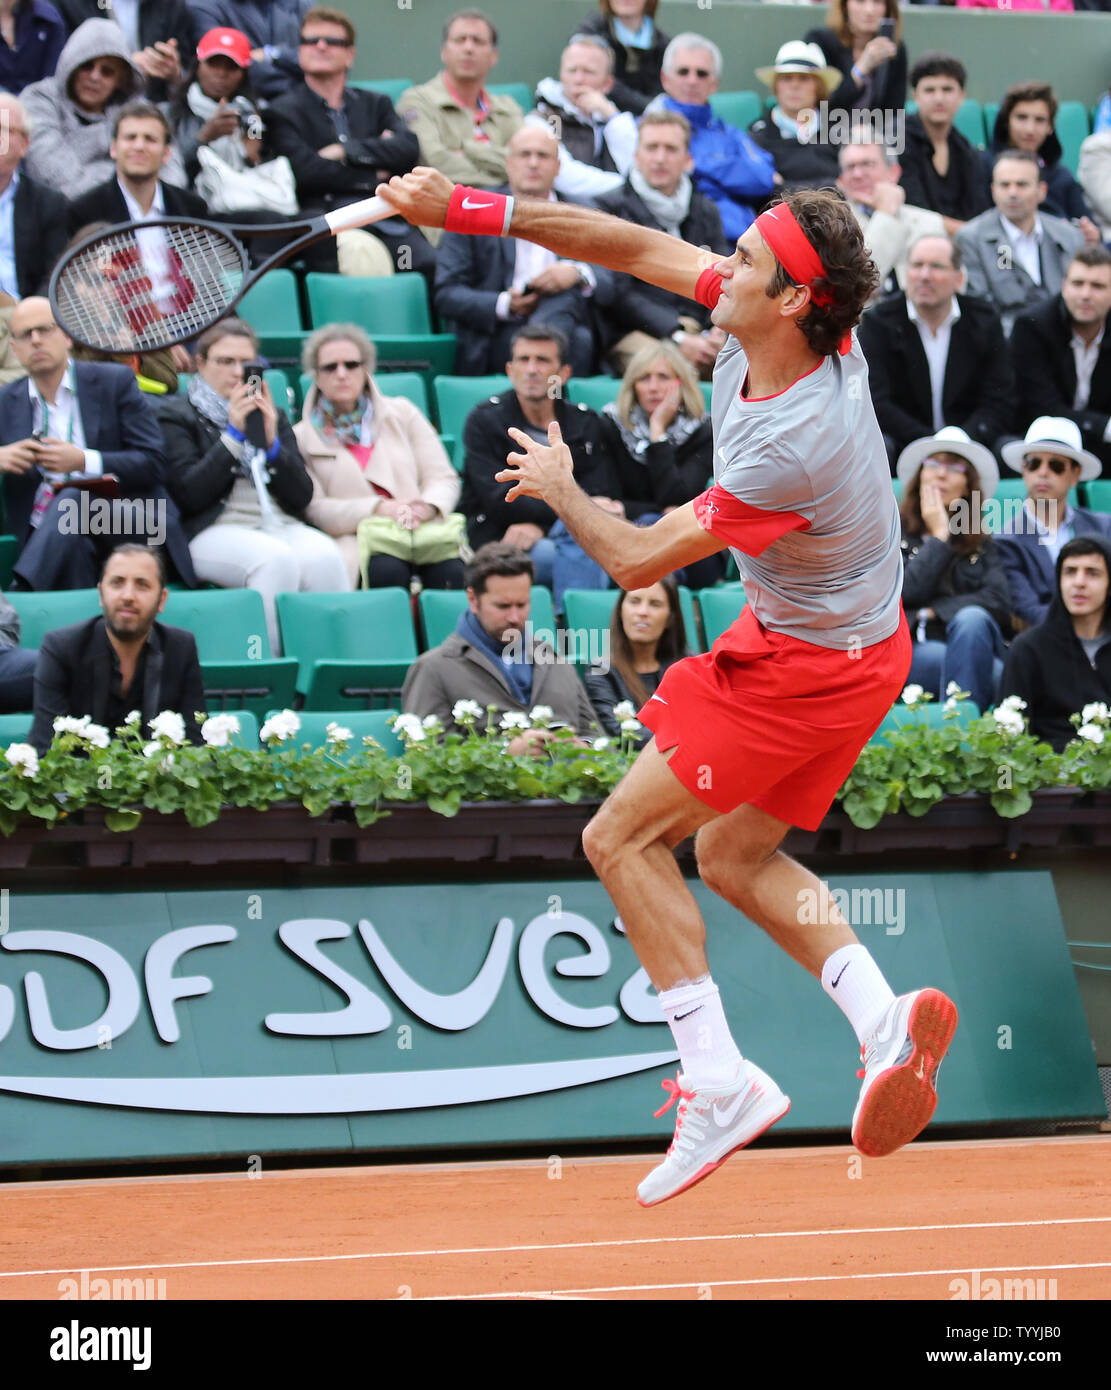 Roger Federer von der Schweiz springt zu einem Overhead hit während der zweiten Runde der French Open Männer Spiel gegen Diego Sebastian Schwartzman von Argentinien in Roland Garros in Paris am 28. Mai 2014. Federer besiegt Schwartzman 6-3, 6-4, 6-4 in die dritte Runde. UPI/David Silpa Stockfoto